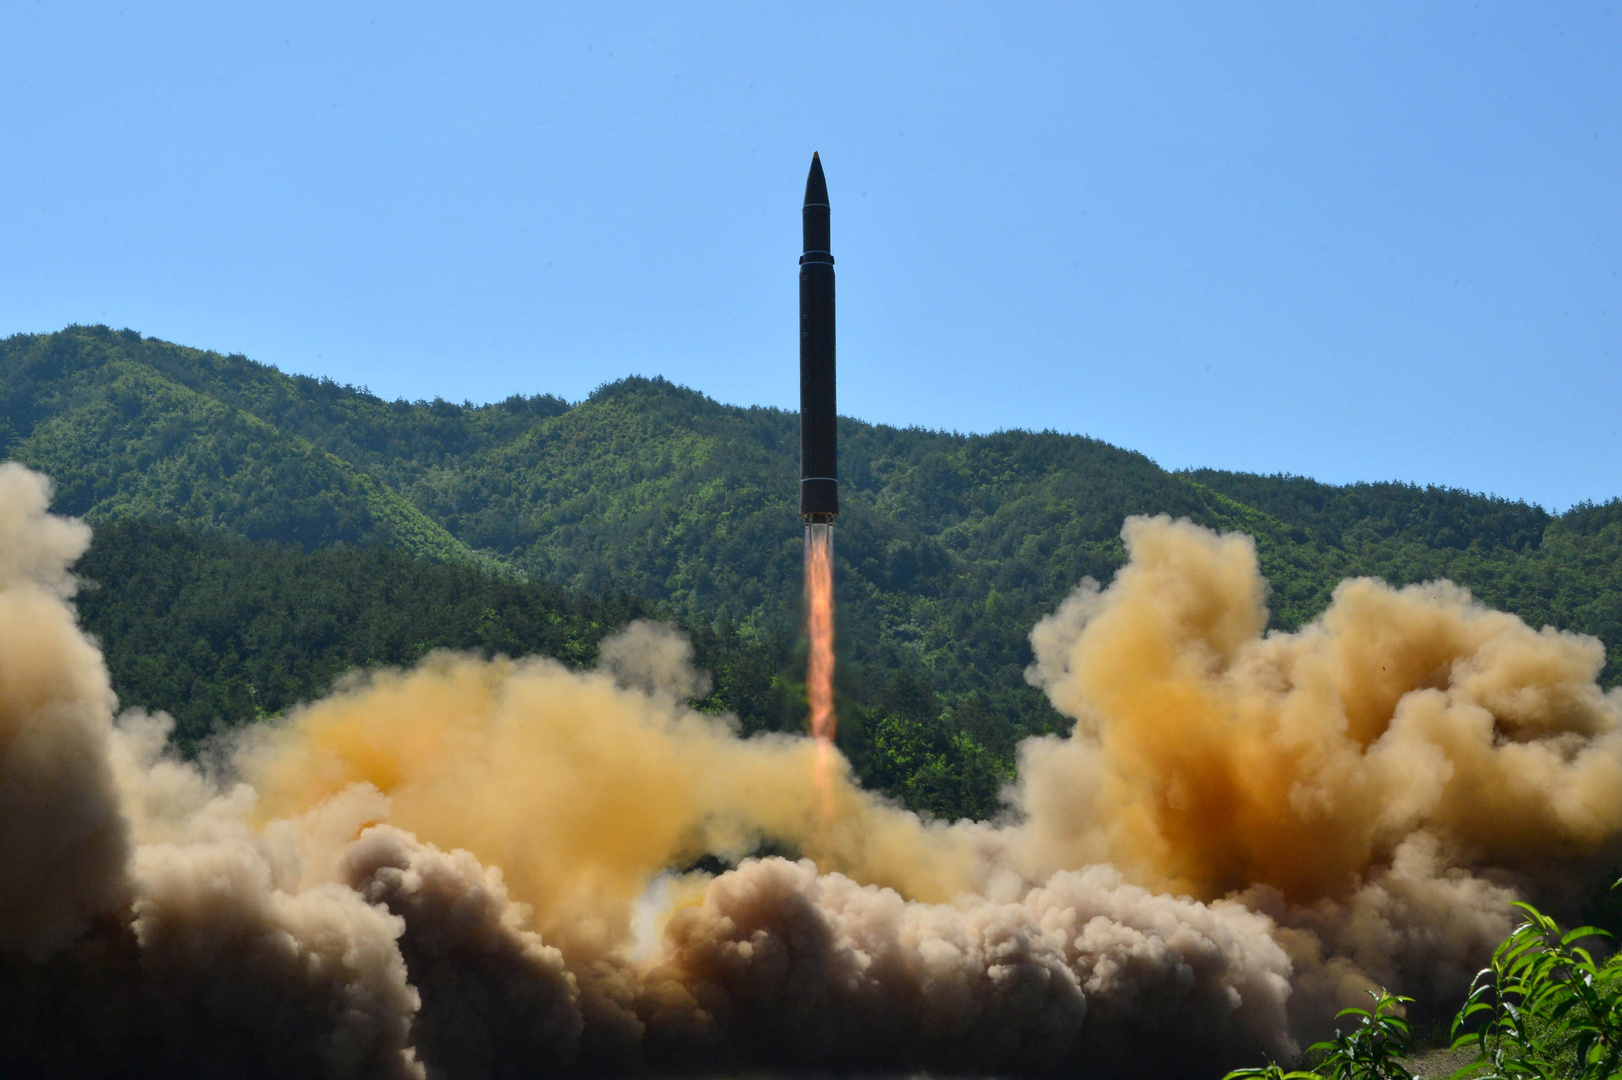 كوريا الشمالية تطلق صاروخين باليستيين واليابان تعقد اجتماعا طارئا لمجلس أمنها